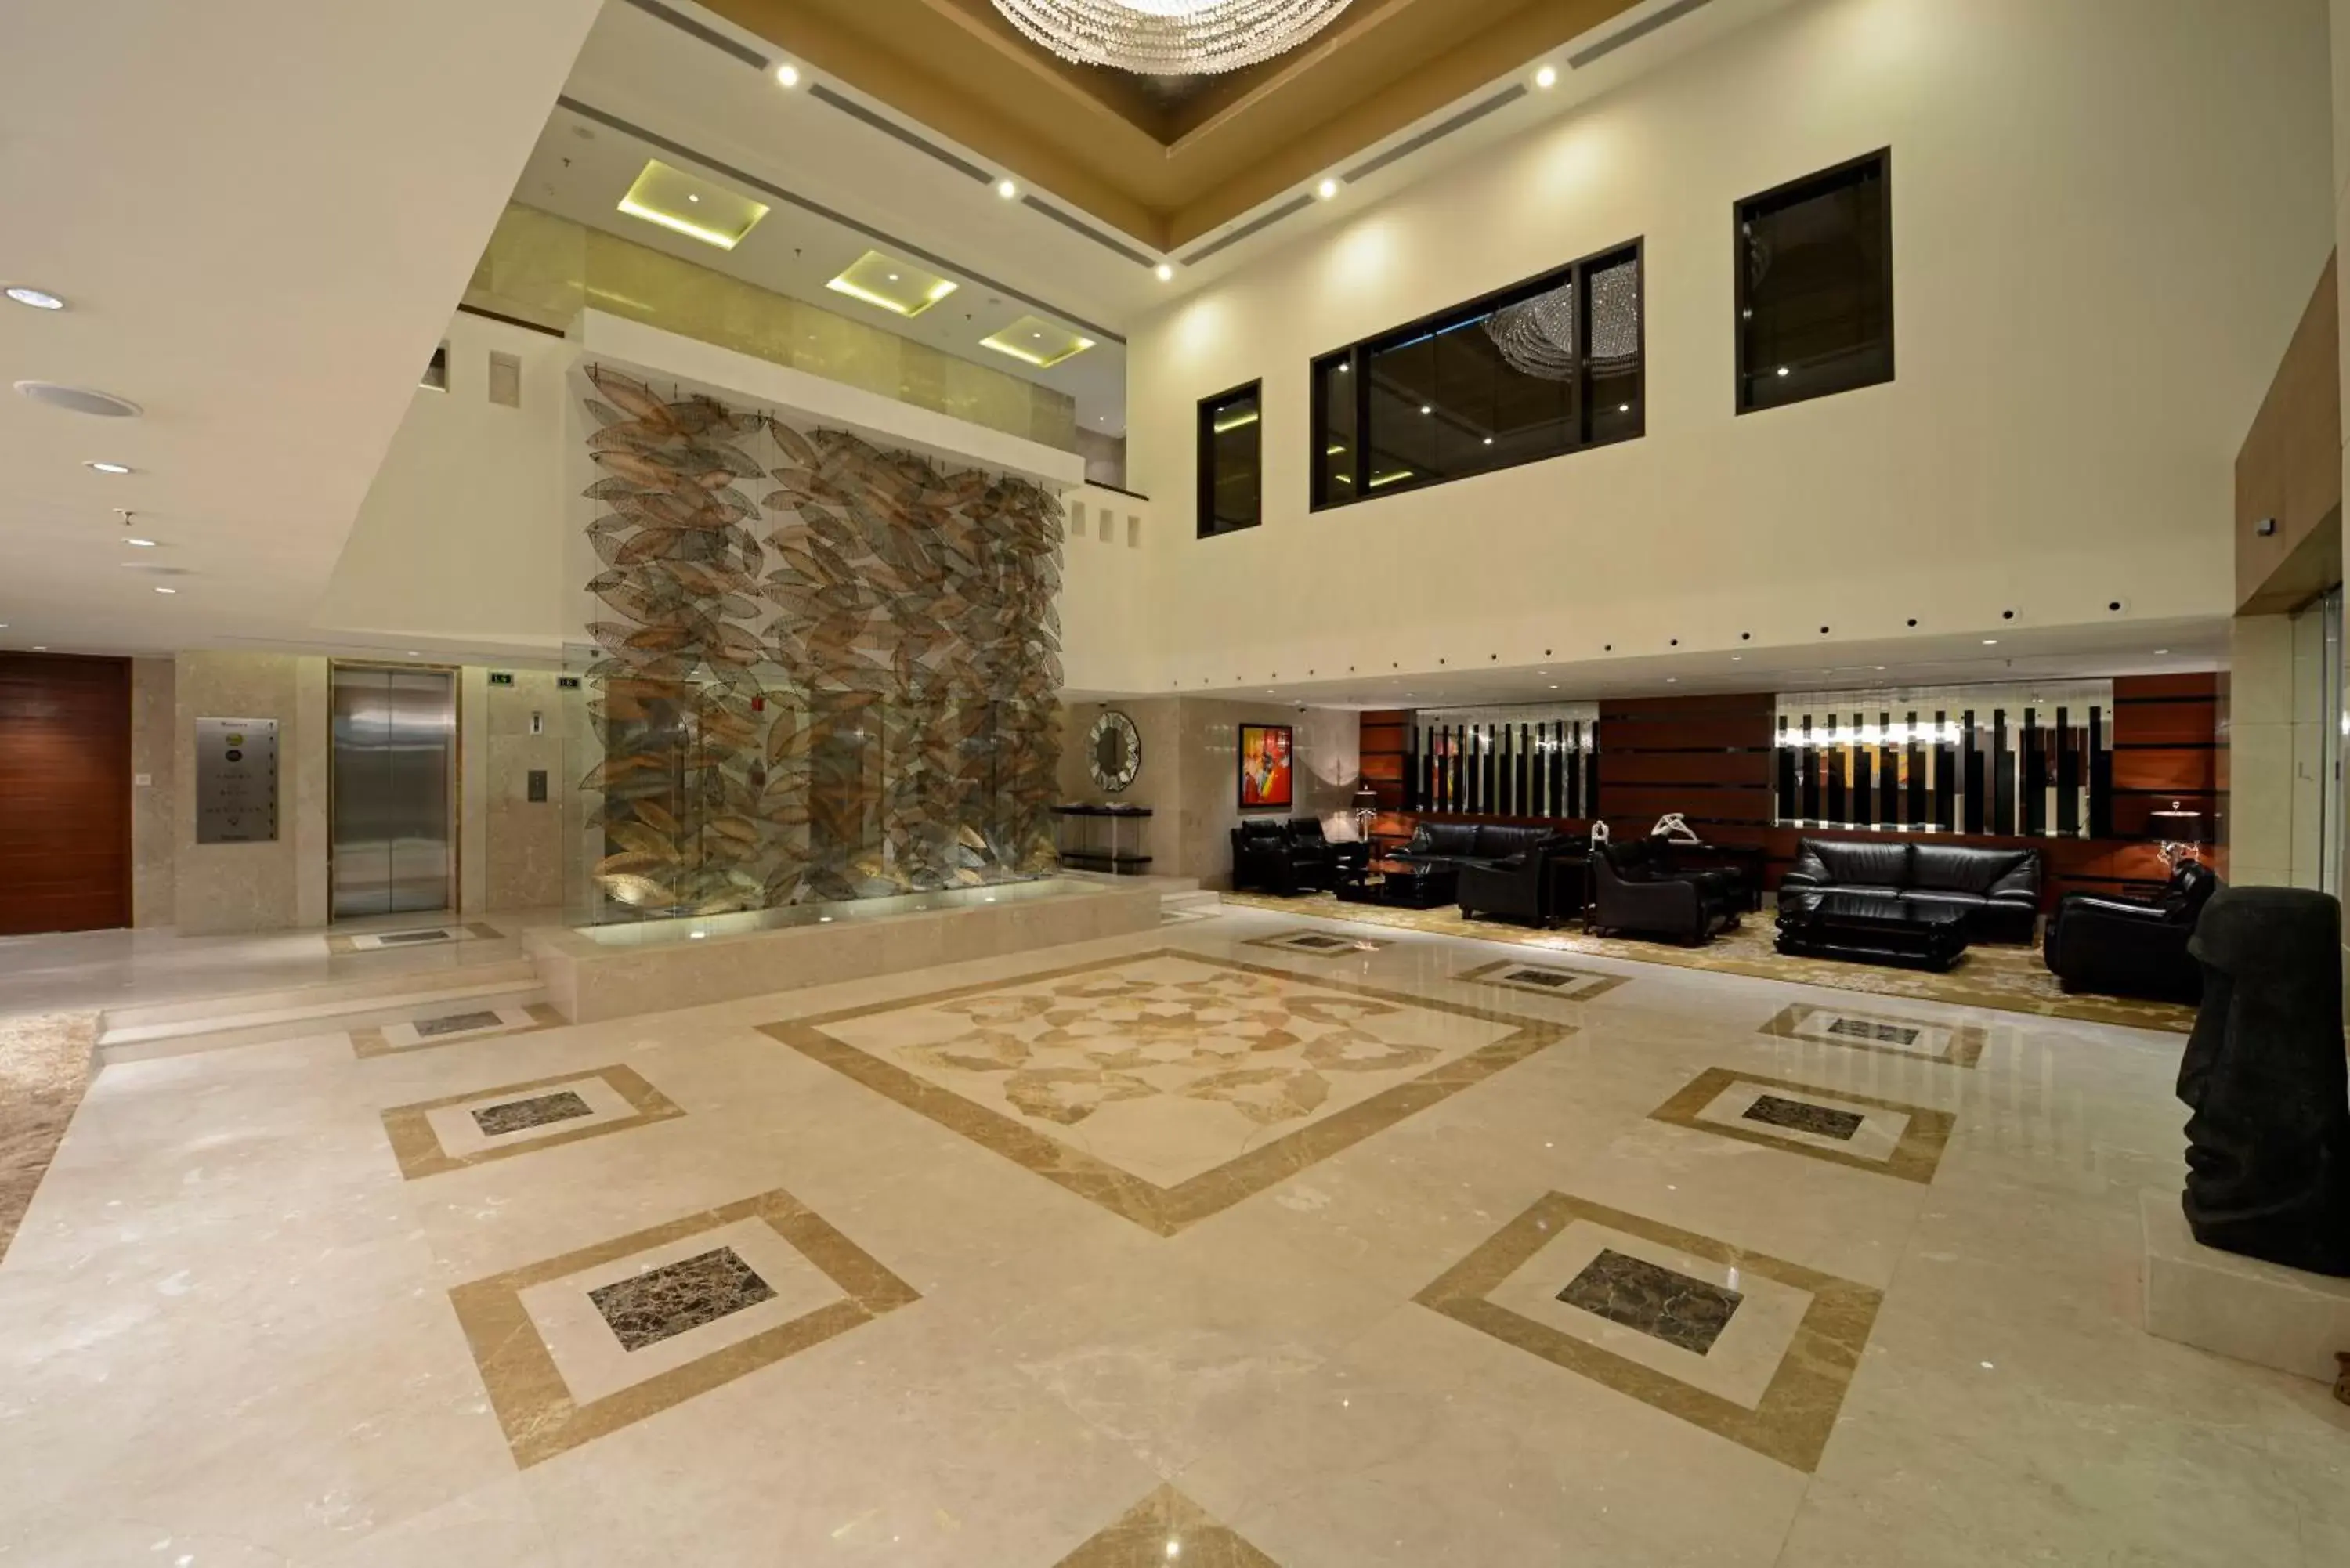 Lobby or reception, Lobby/Reception in Radisson Blu Hotel Ahmedabad